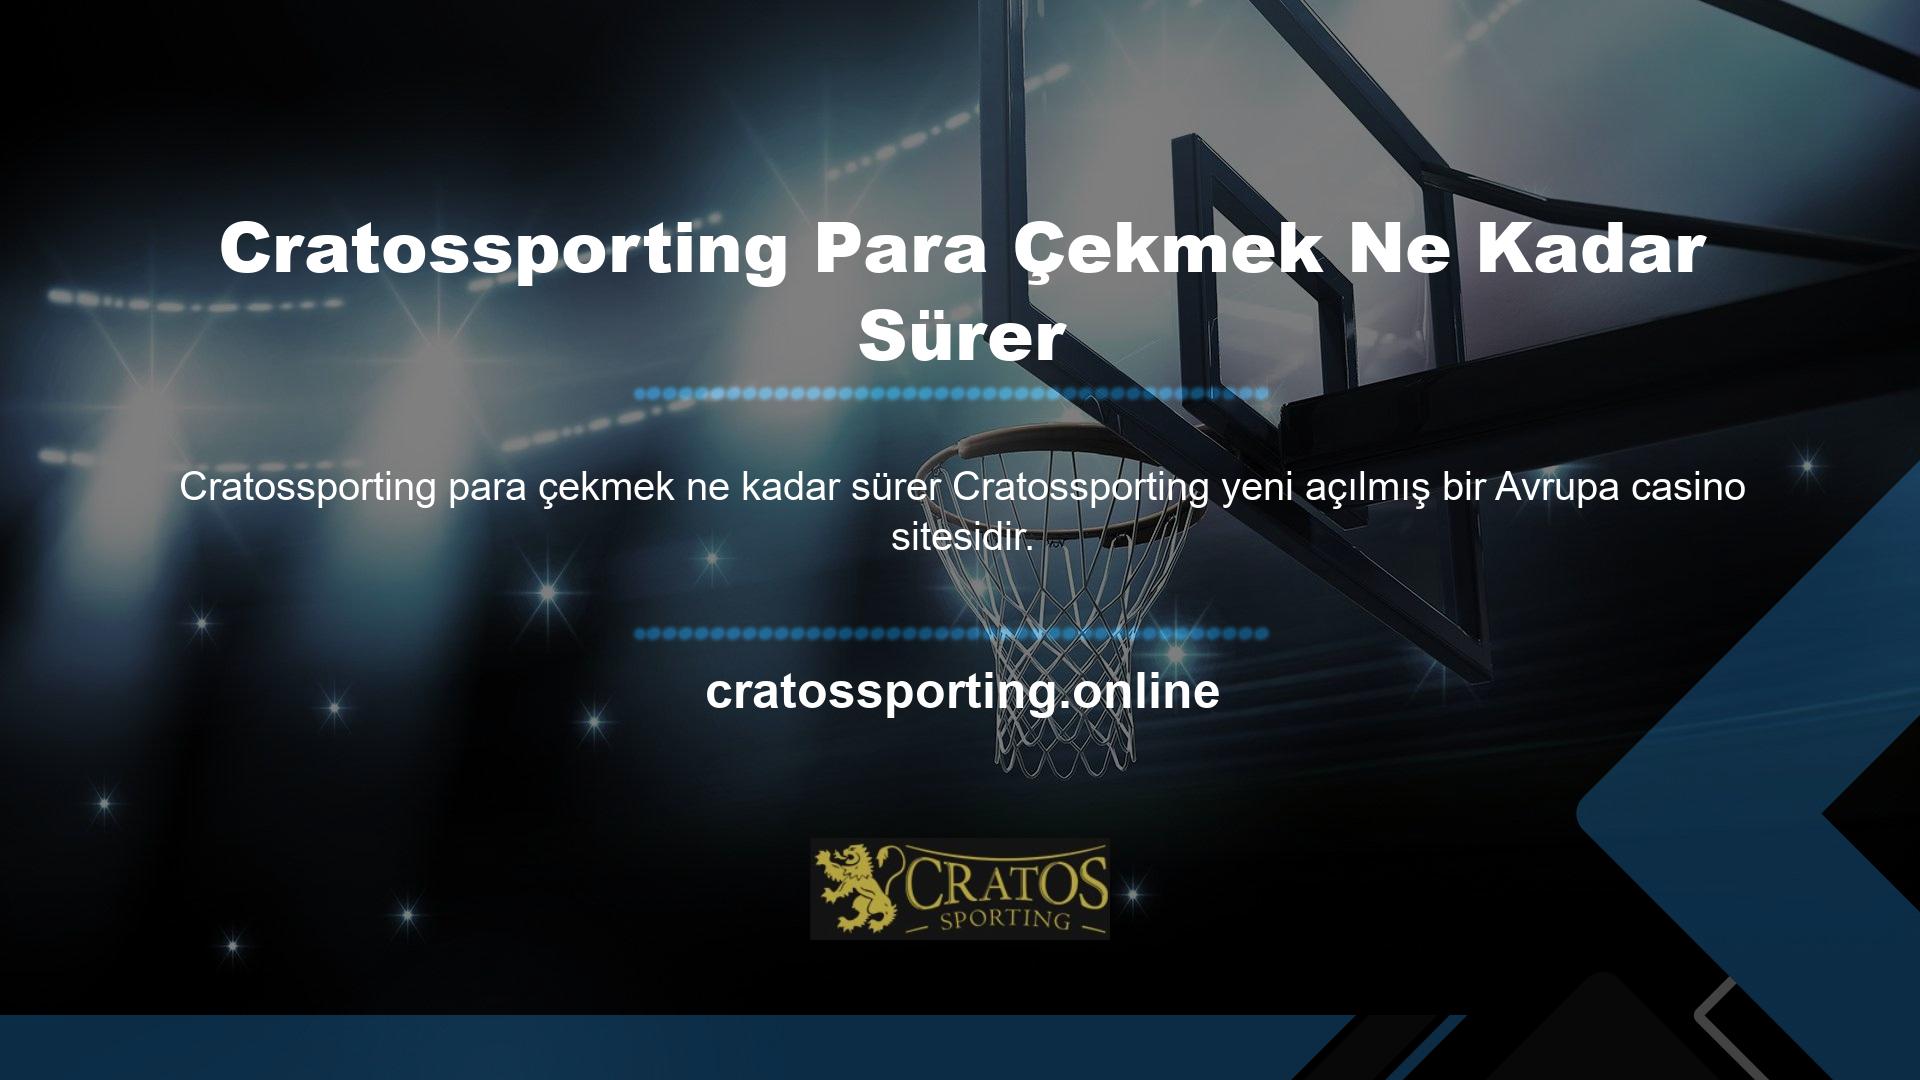 Aynı yıl ülkemizde de hizmetlerine başlayan Cratossporting, özellikle son yılların en popüler bahis sitelerinden biridir